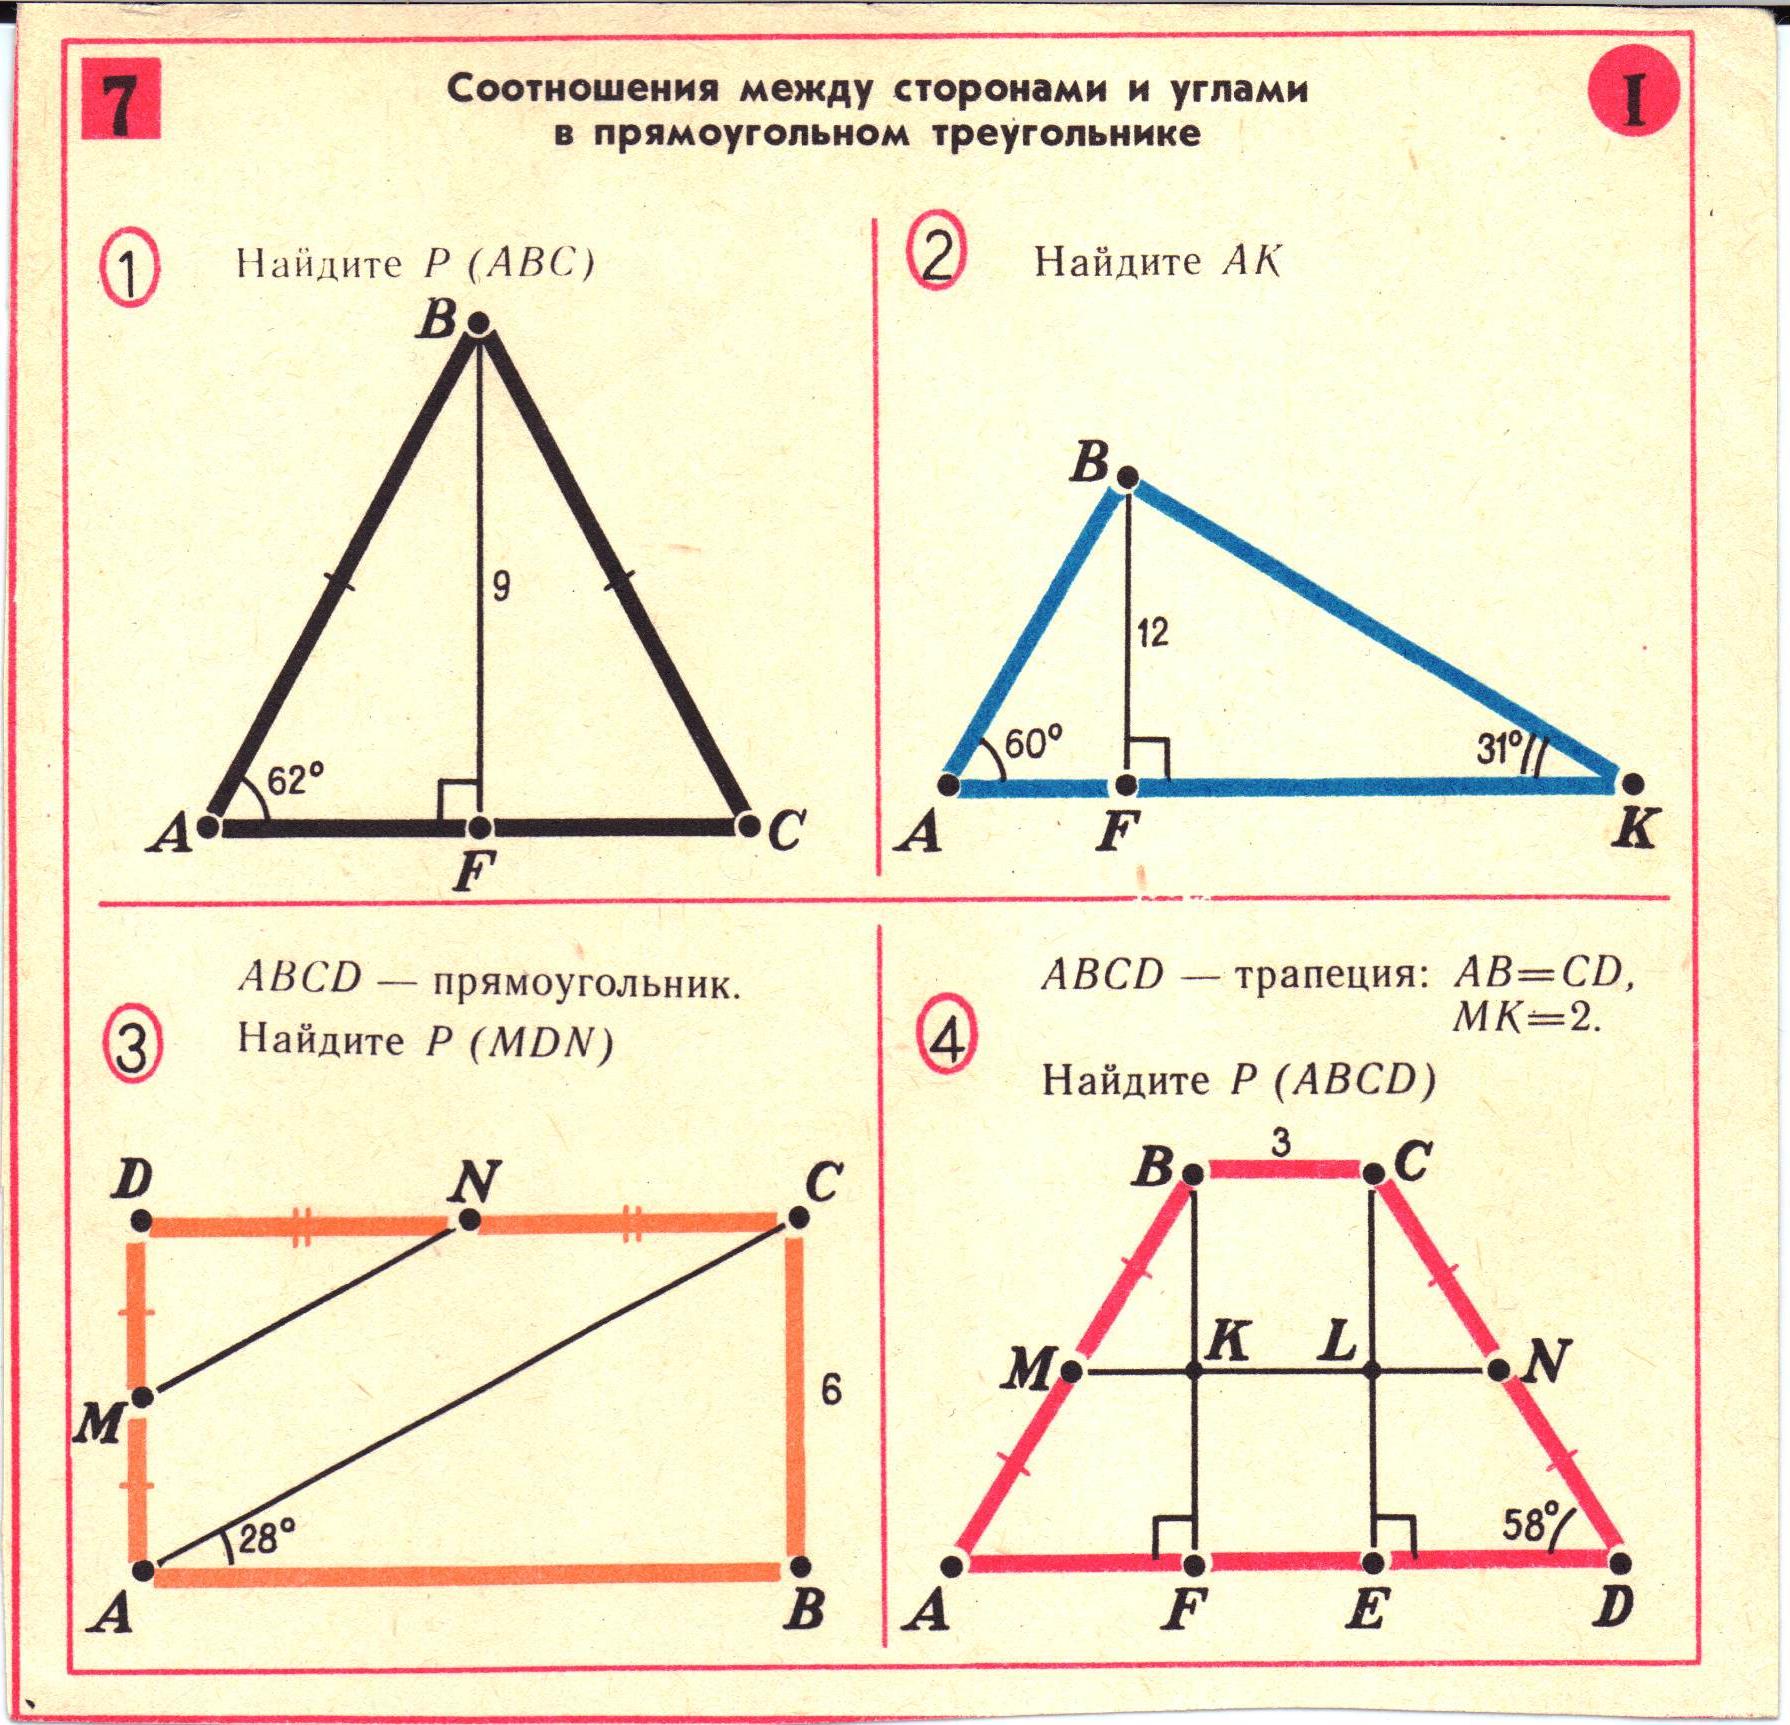 Калькулятор длины стороны треугольника. Соотношение между сторонами и углами прямоугольного треугольника. Соотношение сторон и углов в прямоугольном треугольнике. Соотношение углов и сторон в треугольнике. Как высчитать сторону треугольника.